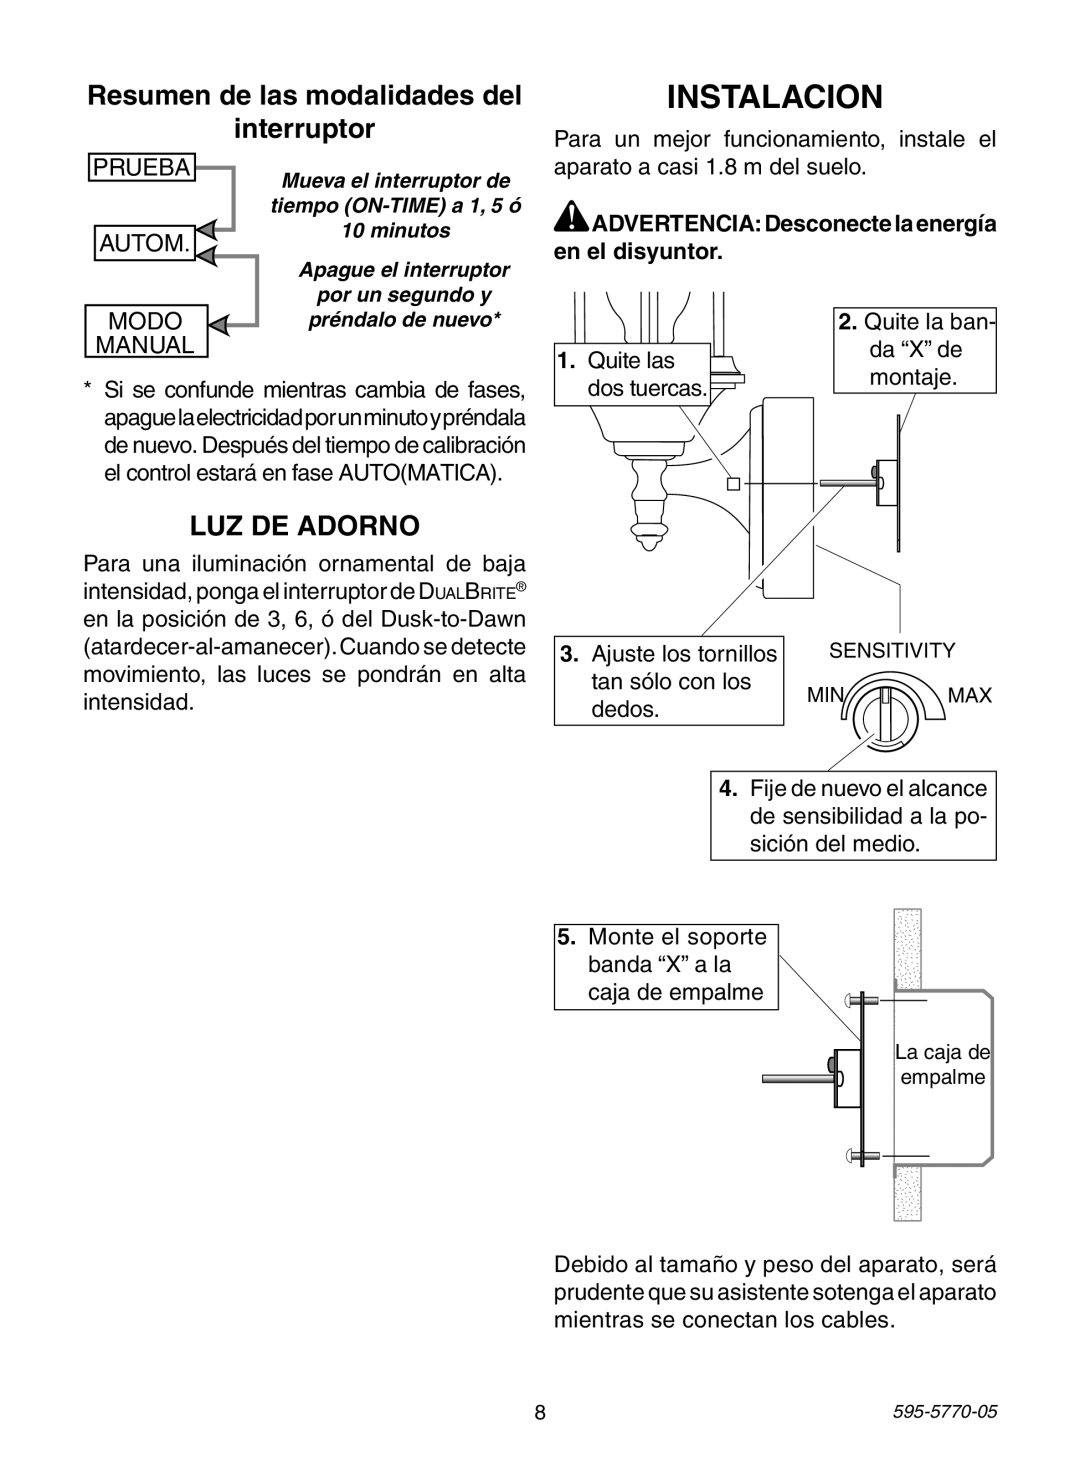 Heath Zenith HB-4190 Series Instalacion, Resumen de las modalidades del interruptor, Luz De Adorno, Prueba, Autom, Modo 